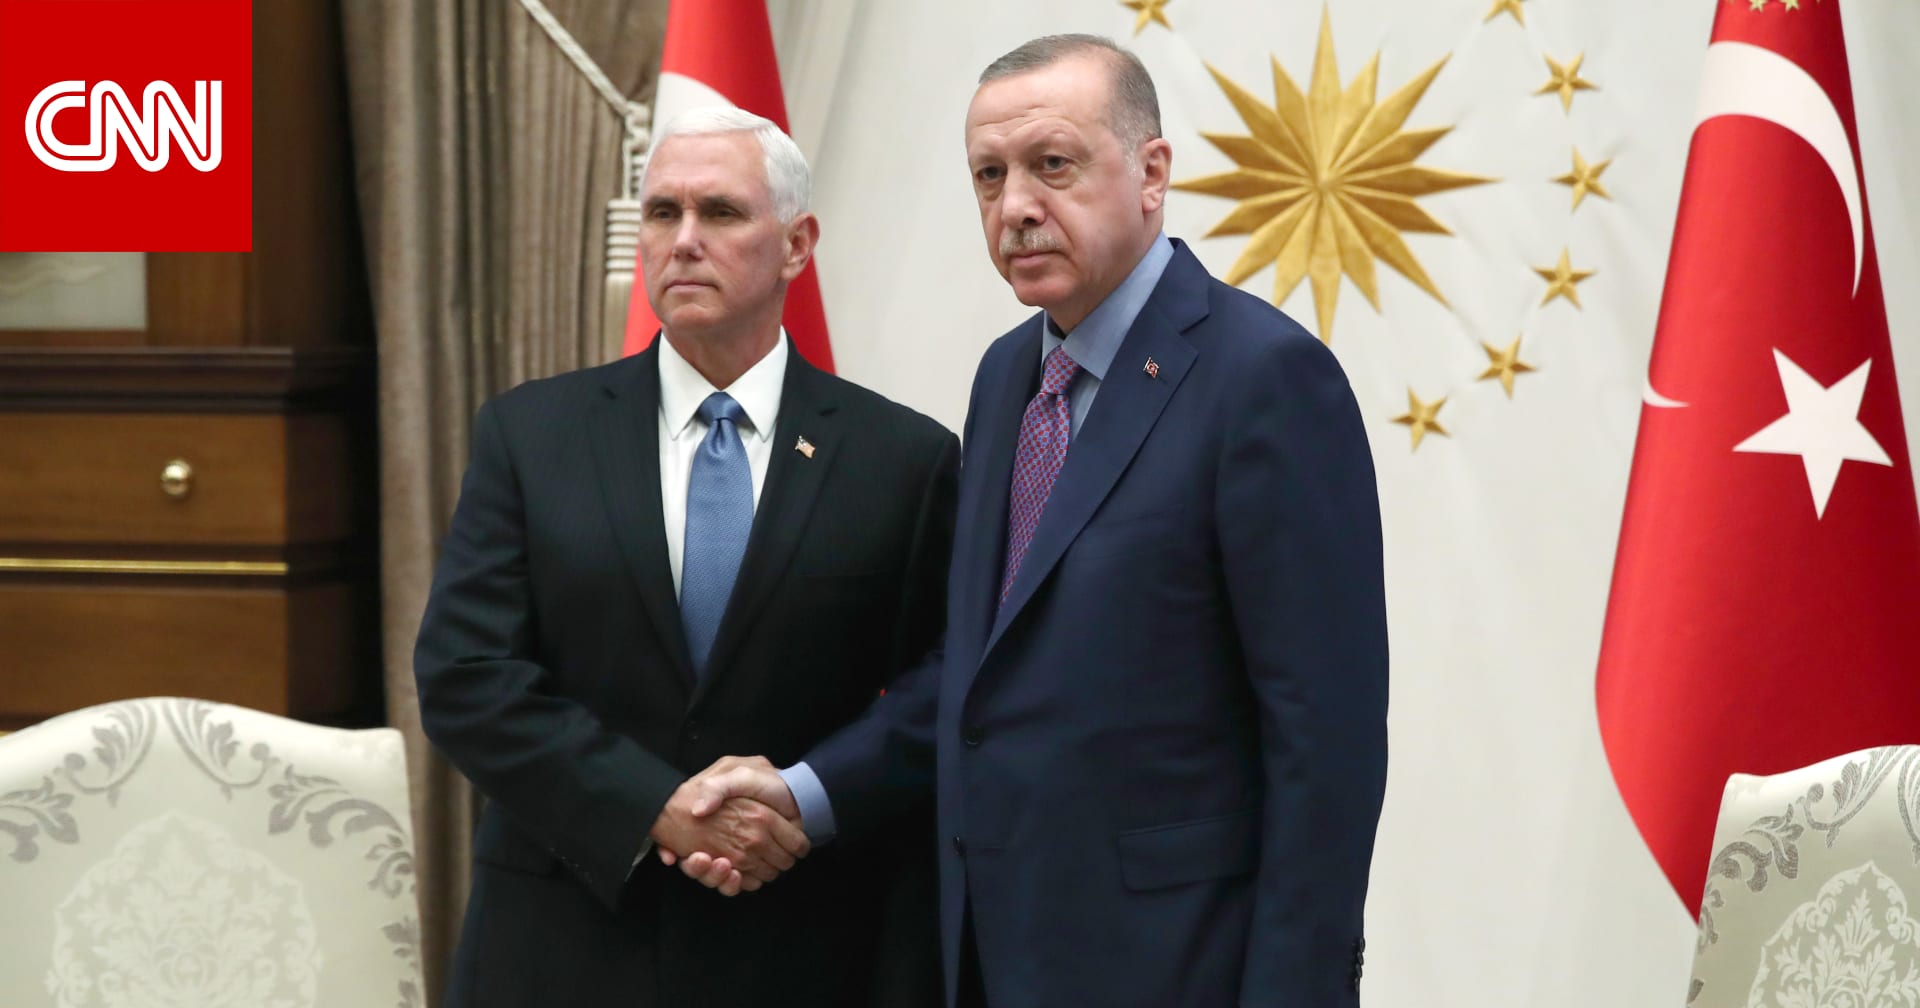 4 أمور انتبه لها باتفاق  تعليق  عمليات تركيا في سوريا بعد لقاء بنس وأردوغان 